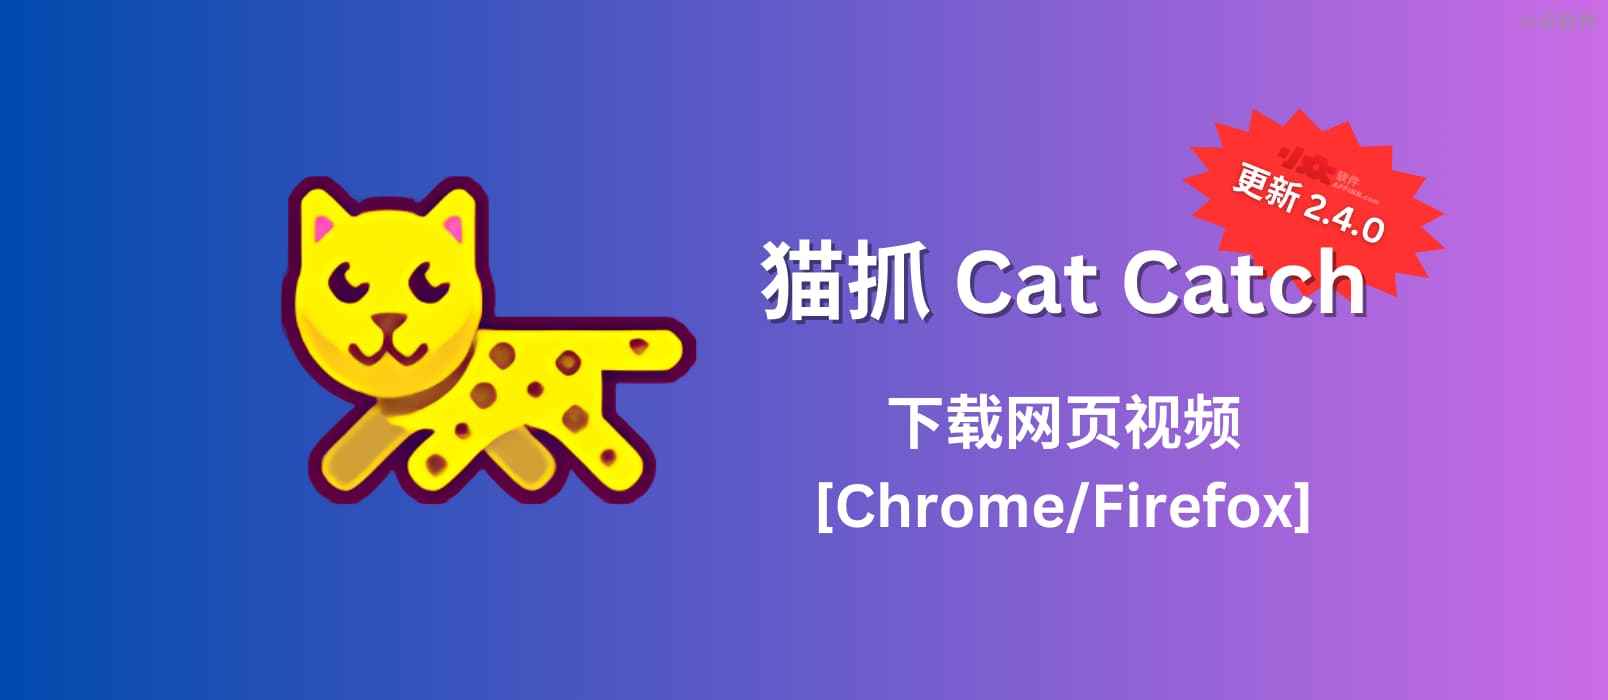 猫抓 Cat Catch 2.4.0 发布，帮你下载网页视频[Chrome/Firefox]